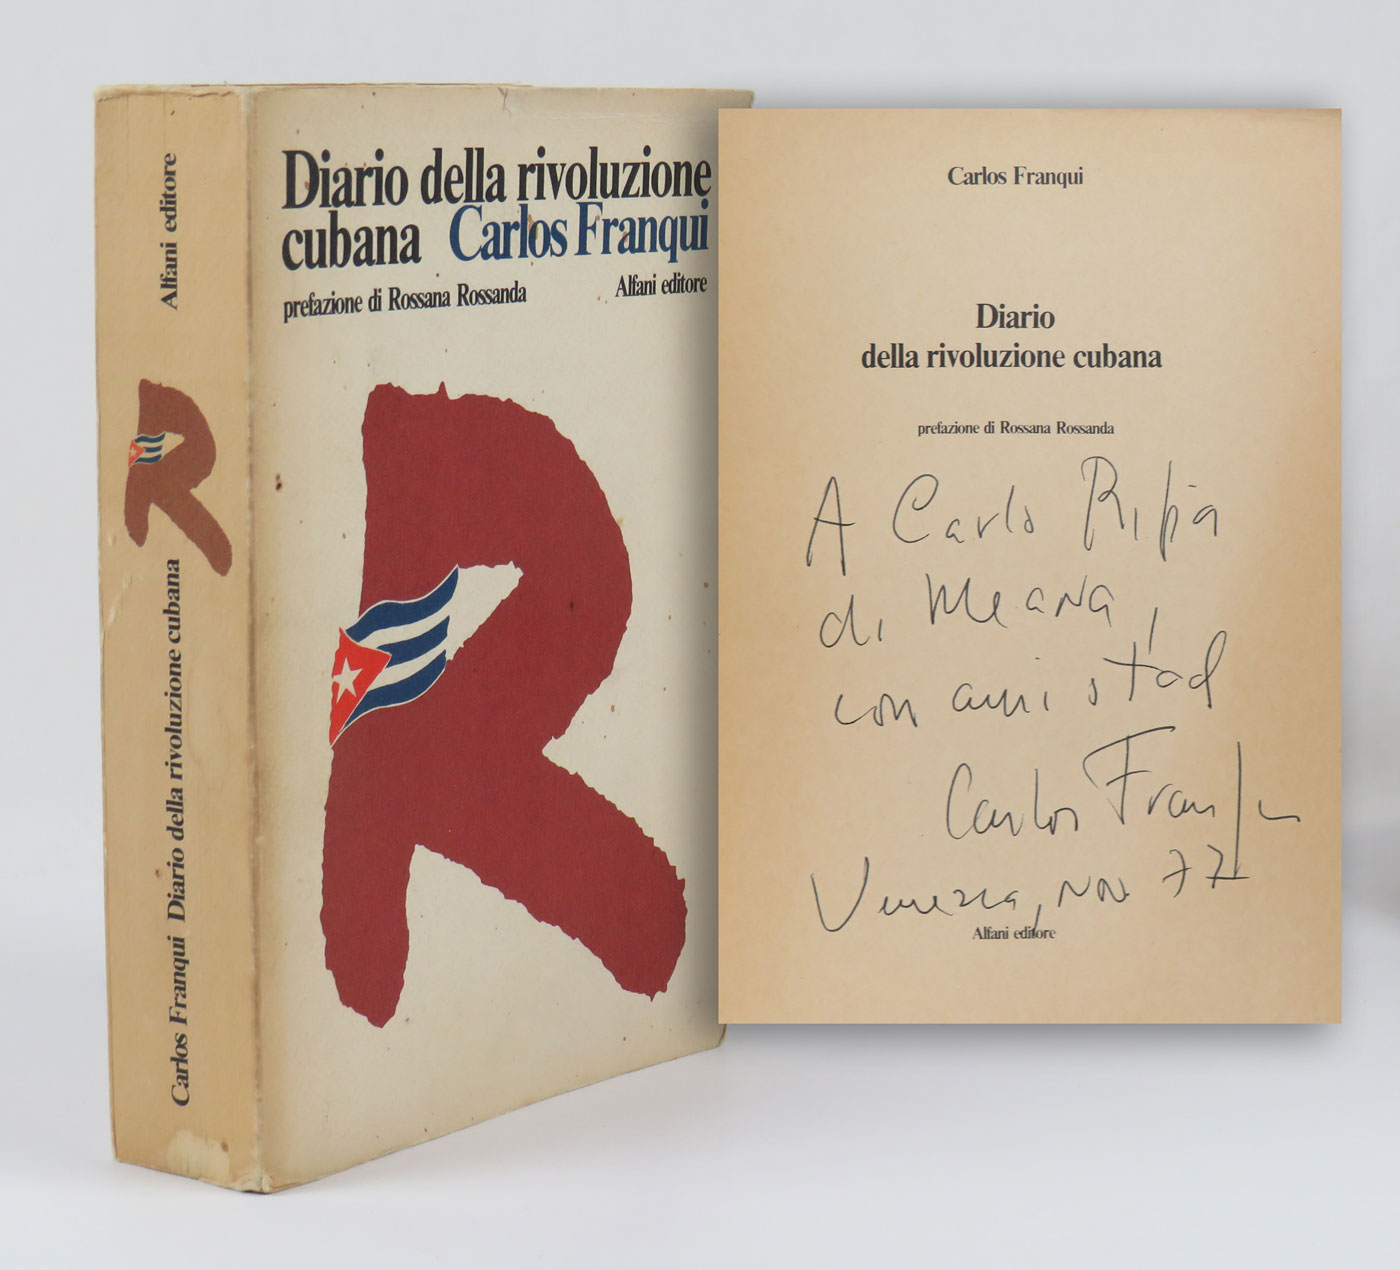 diario della rivoluzione cubana [diario de la revolución cubana]. prefazione di rossana rossanda